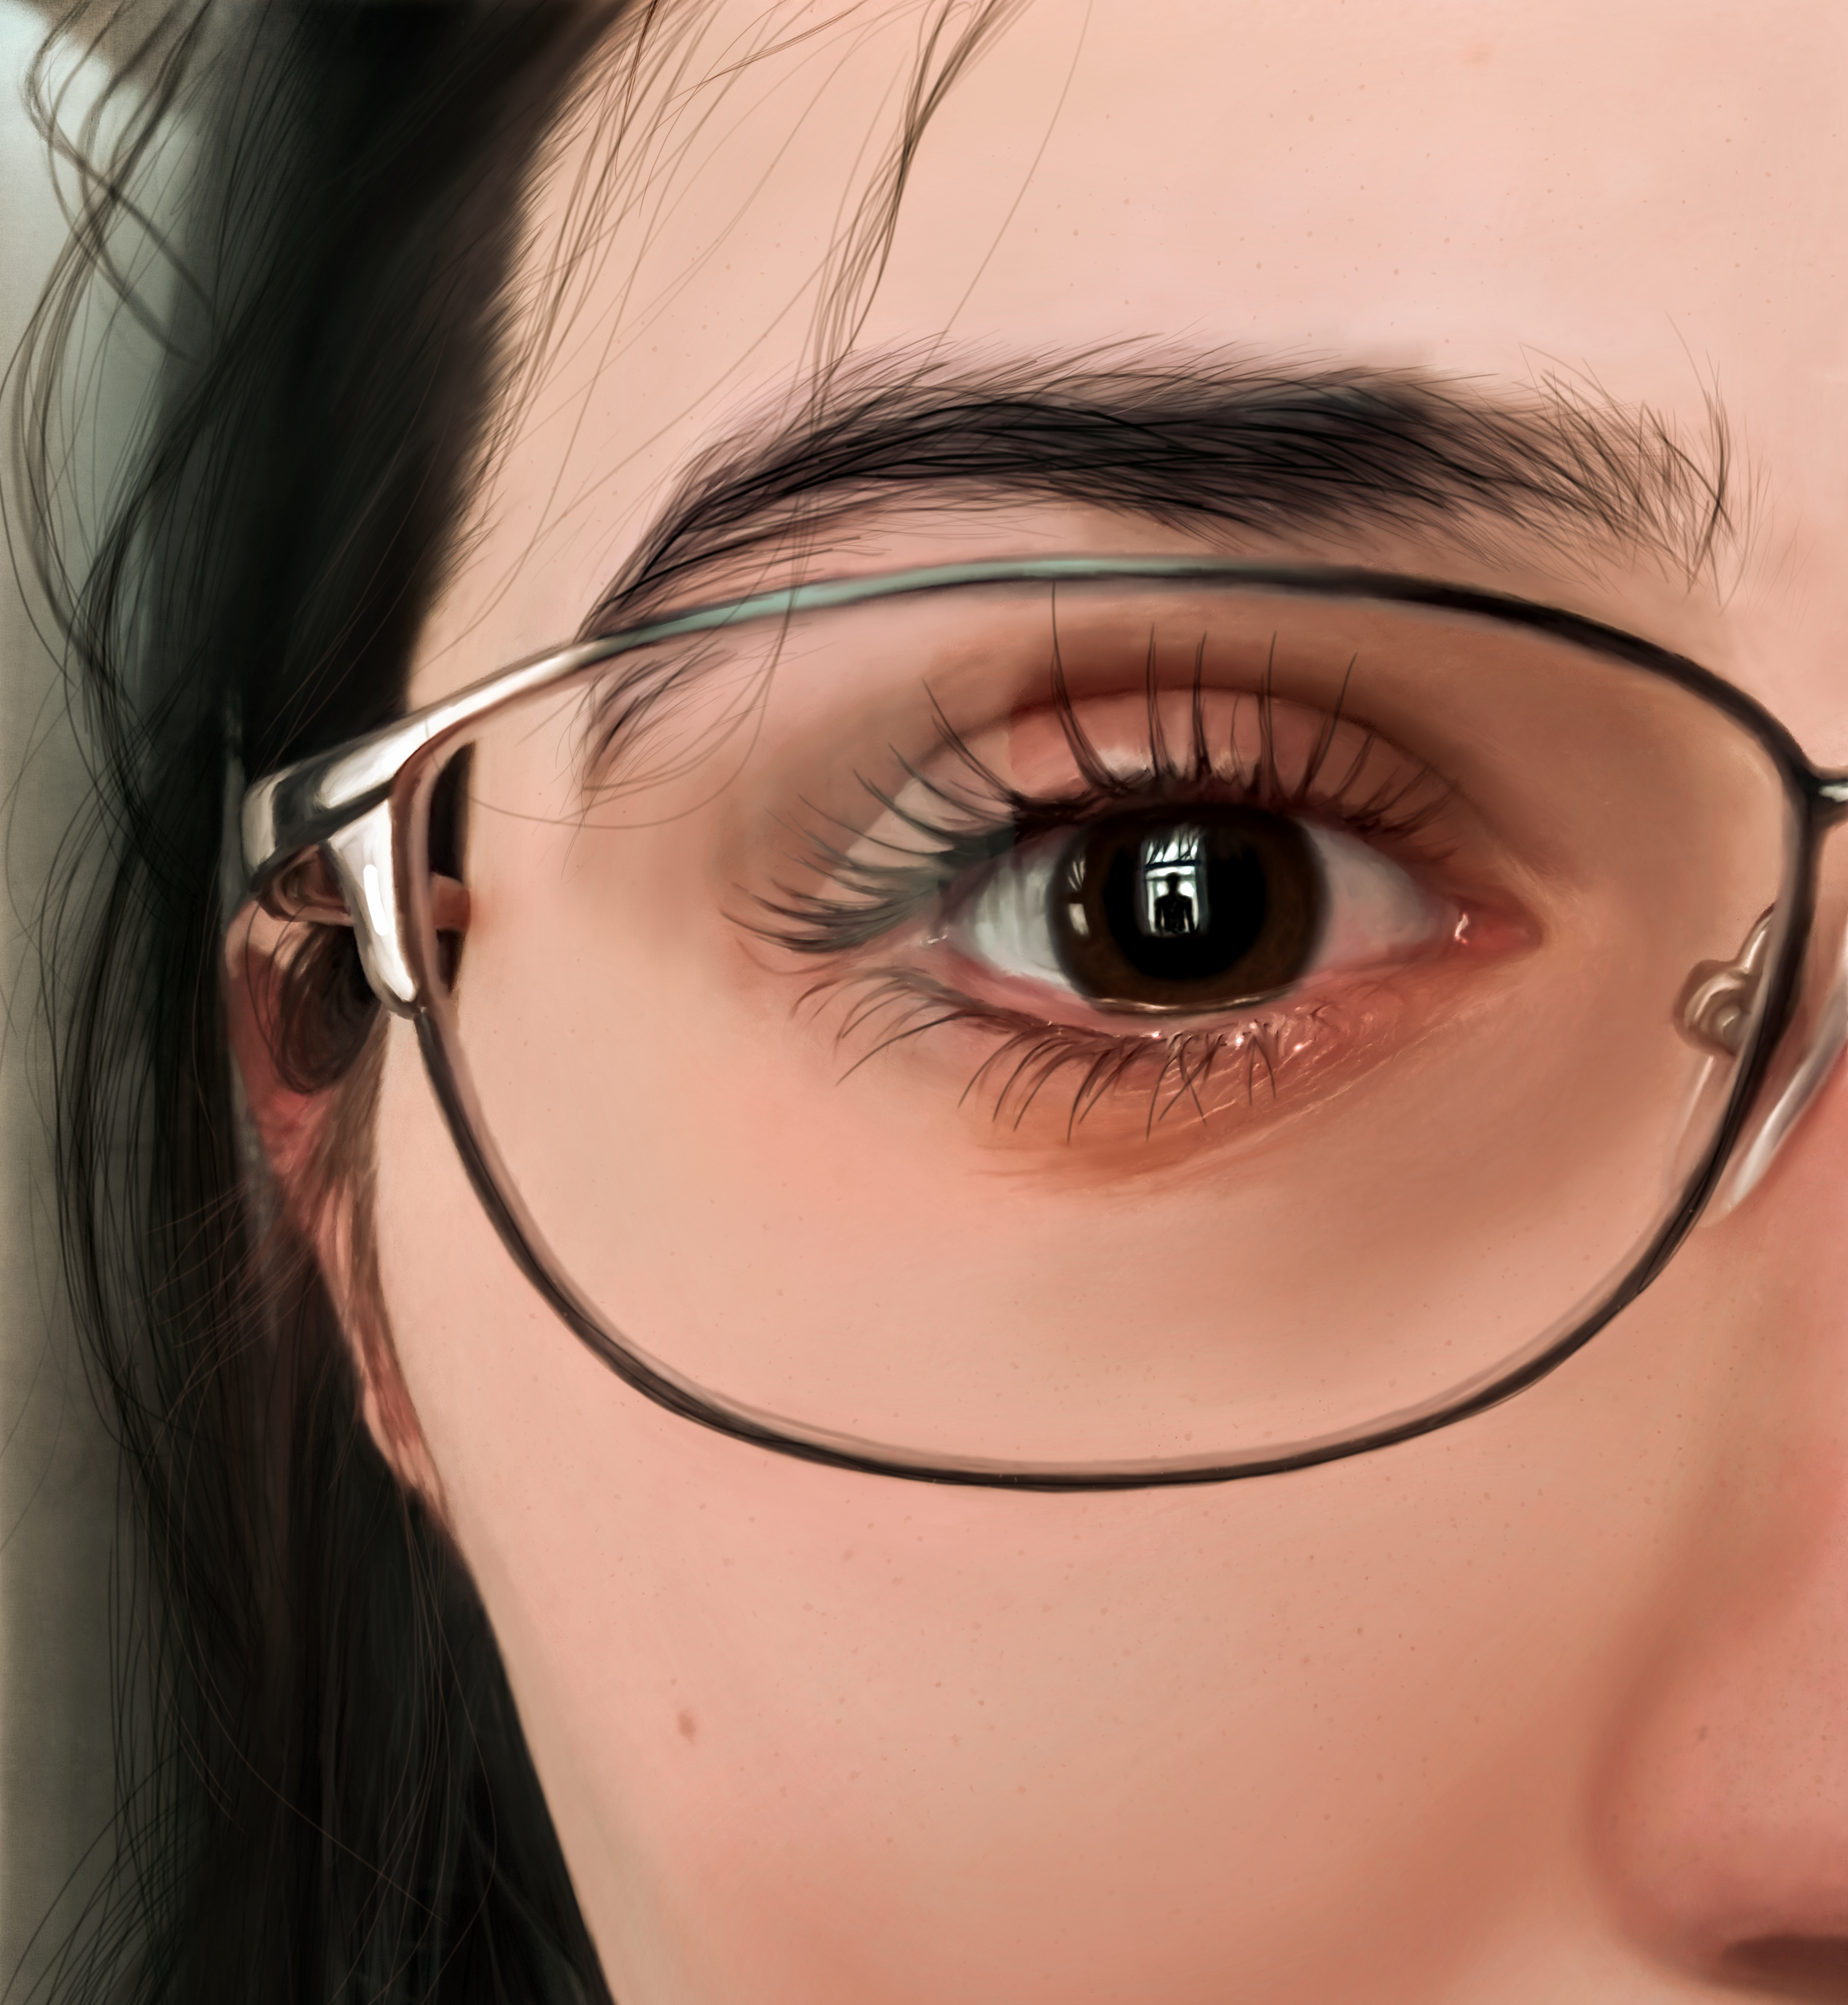 Drawing Eyes Face Glasses Reflection Looking At Viewer Dark Hair Closeup Artwork 3000x3254